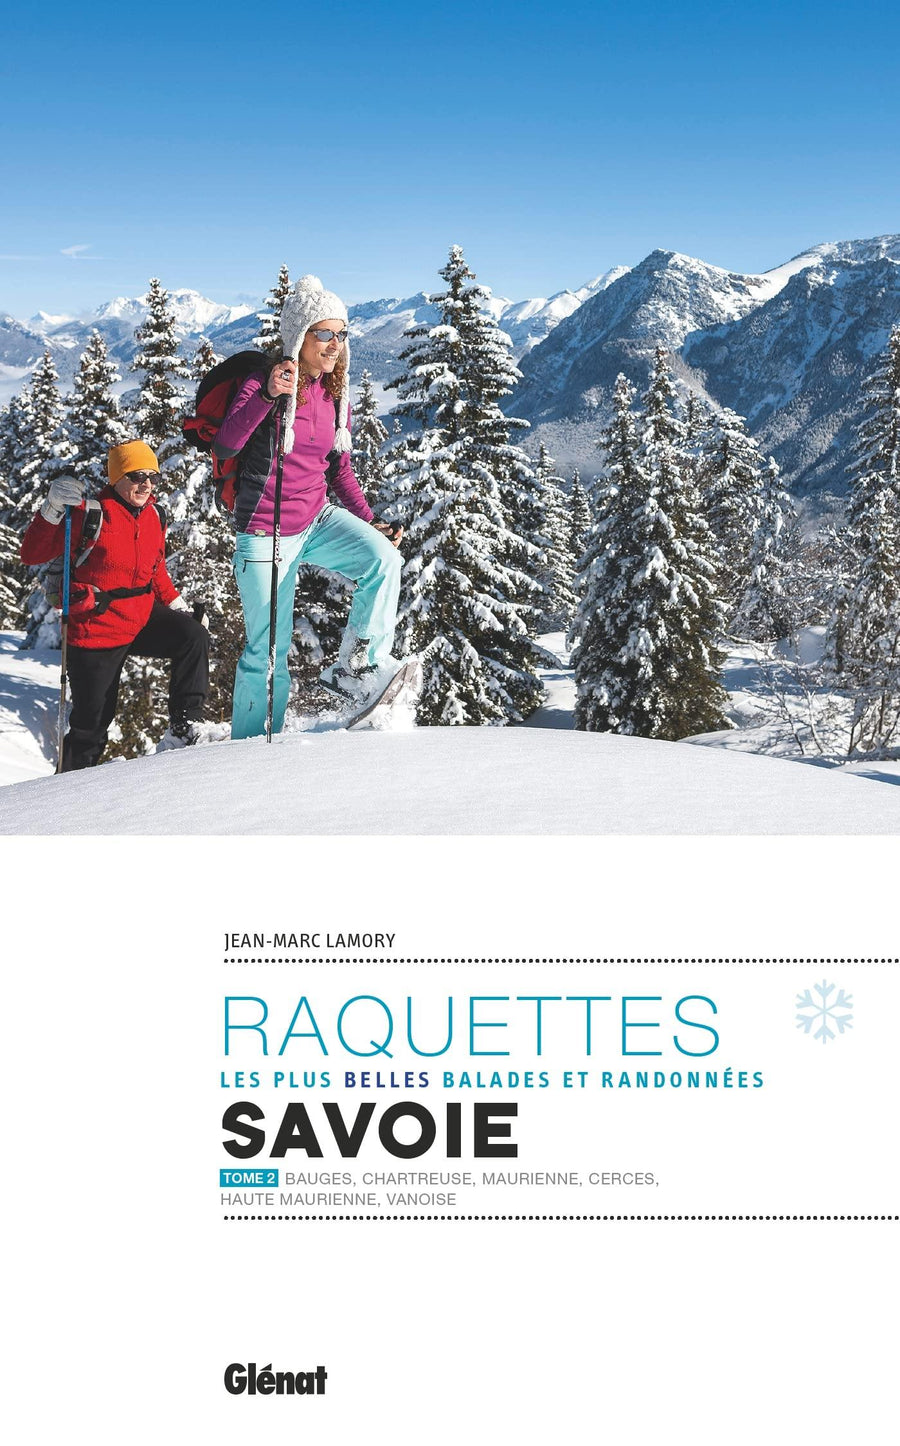 Guide de randonnées à raquettes - Savoie, les plus belles randonnées - Tome 2 | Glénat - Rando Evasion guide de randonnée Glénat 